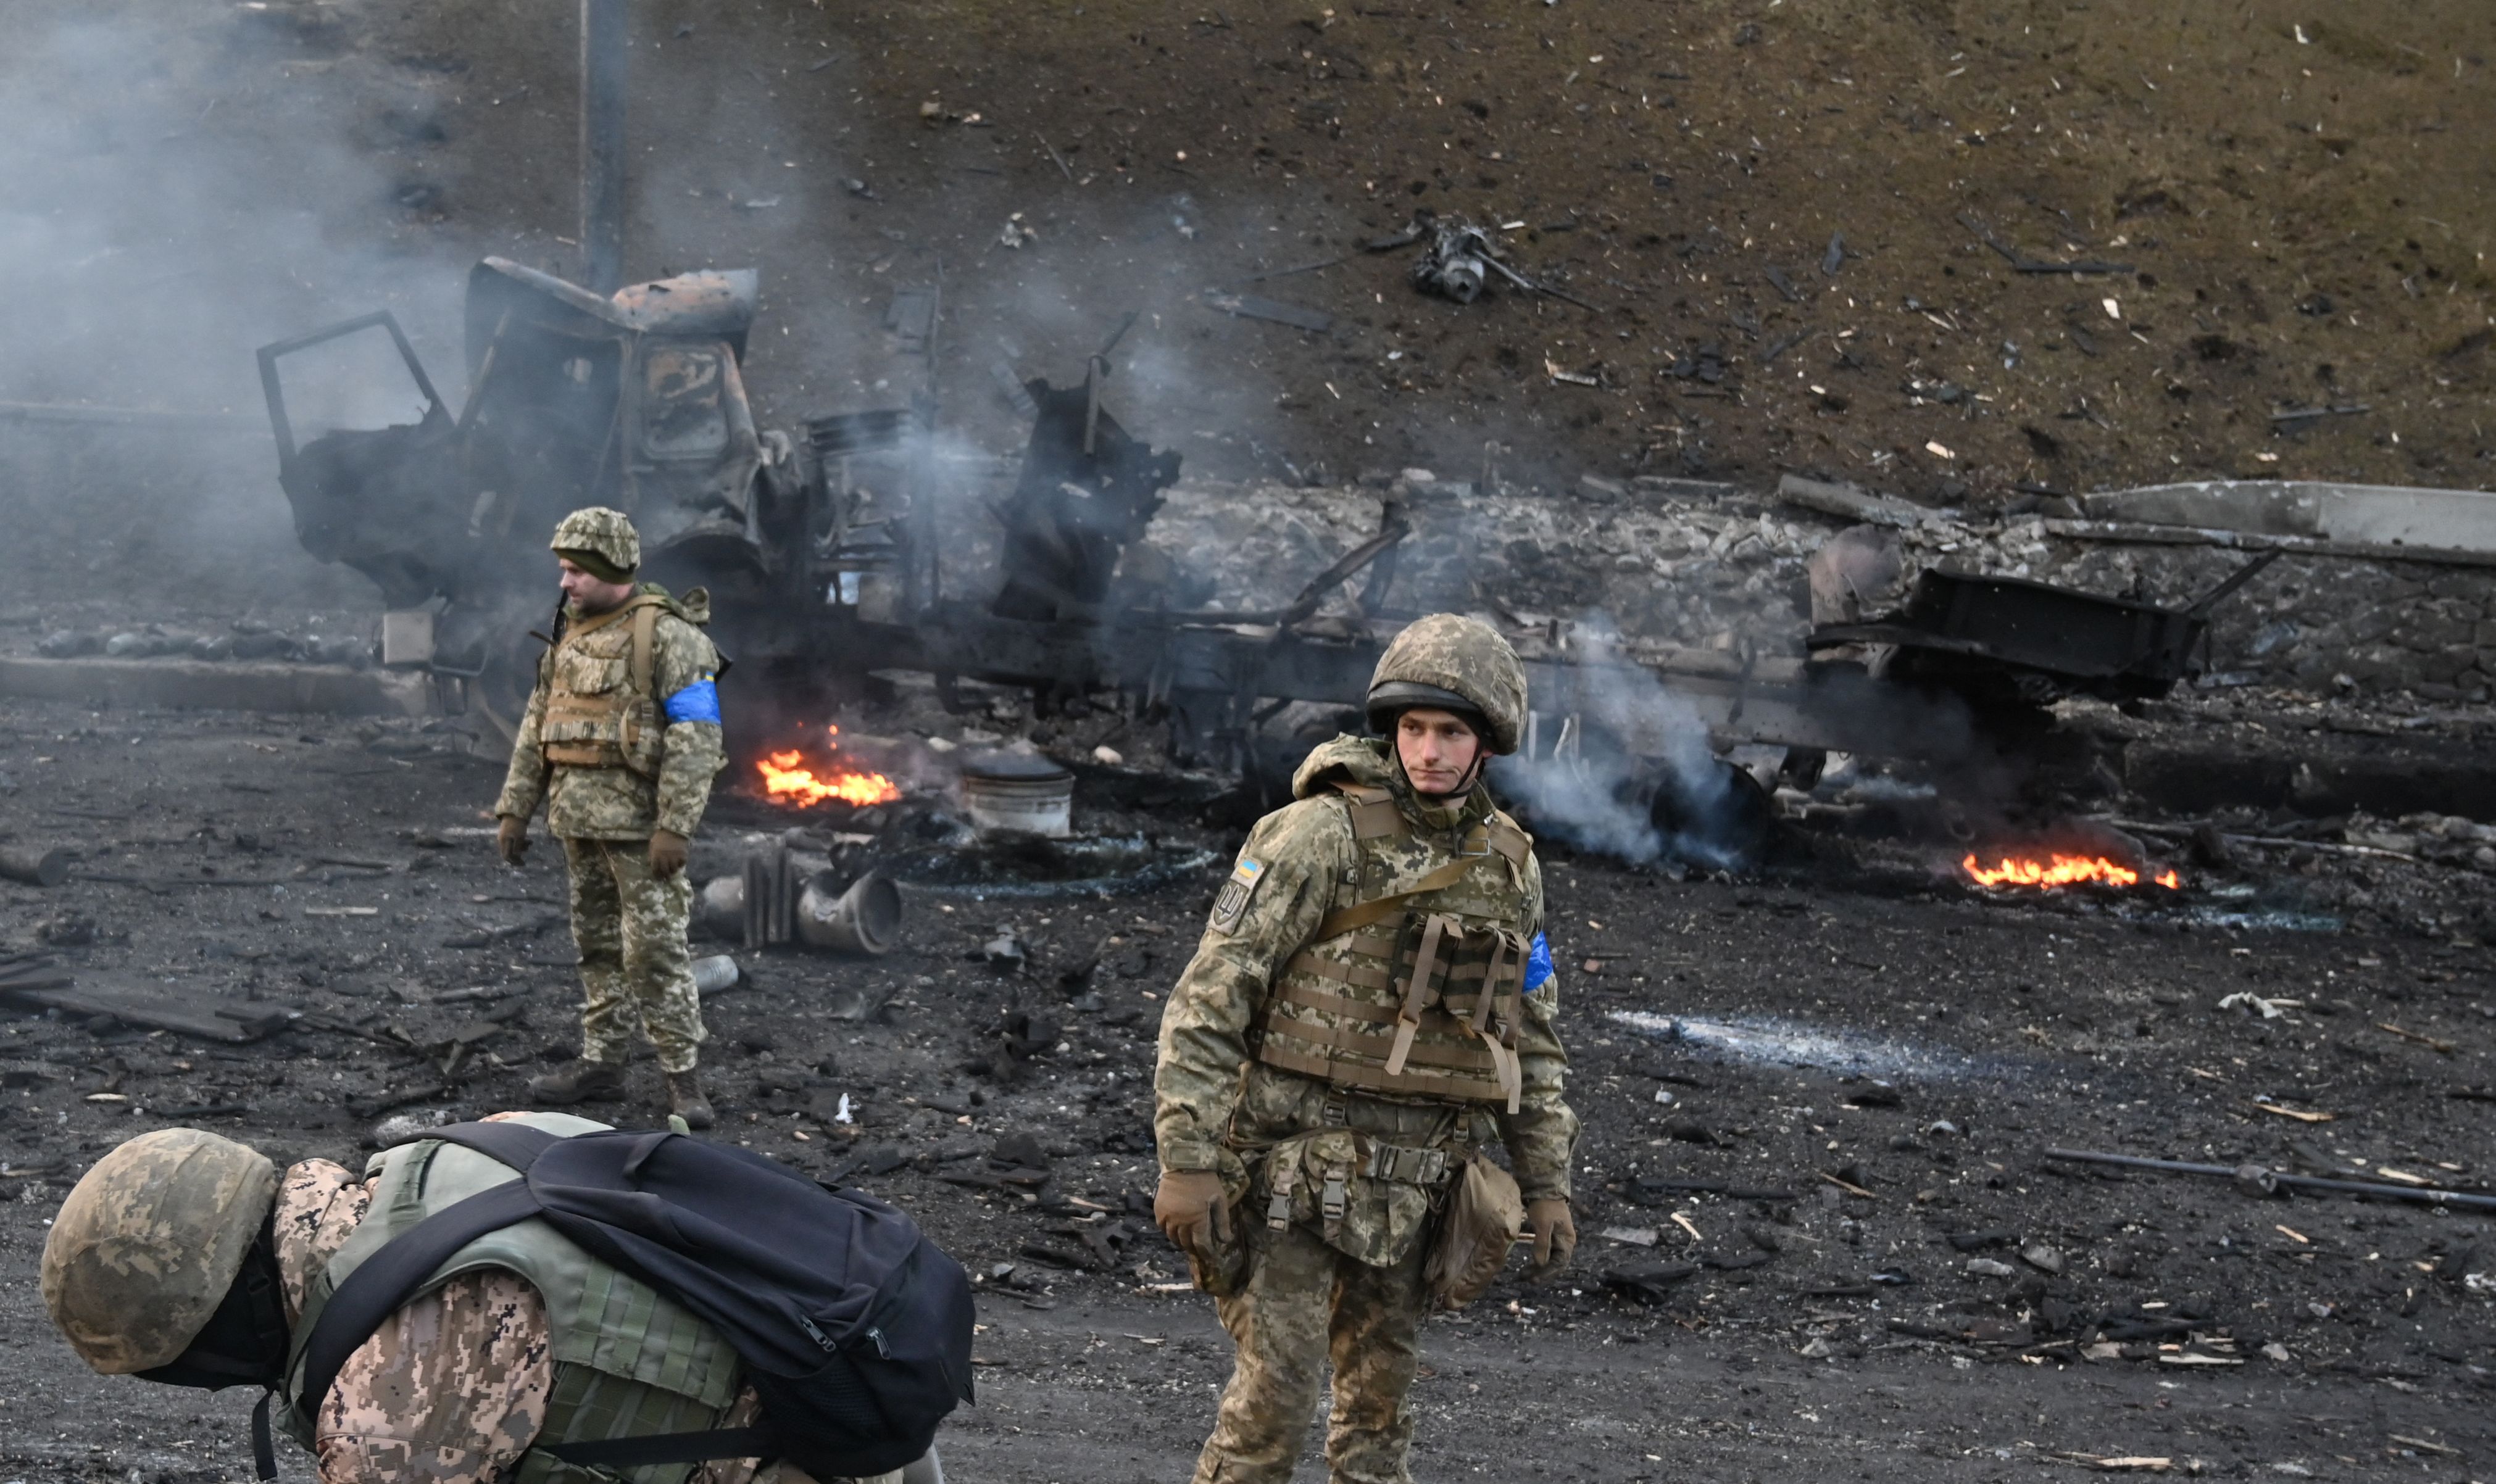 Guerra entre Ucrania y Rusia retoma problemas pendientes de su pasado |  Internacional | Noticias | El Universo